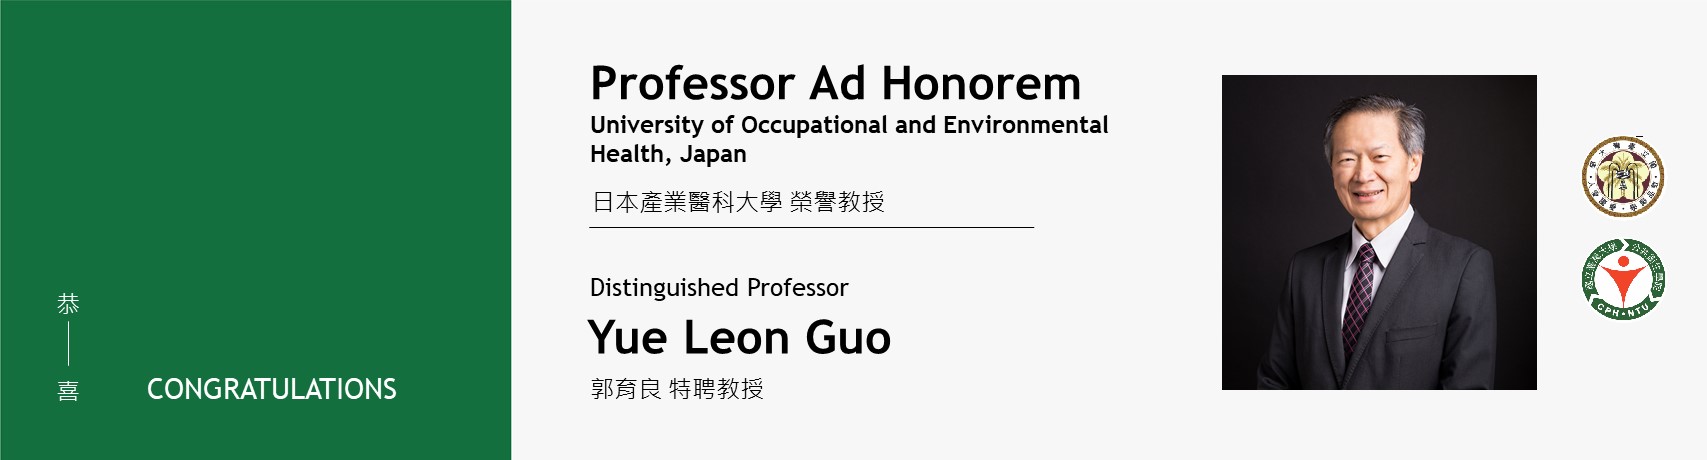 【賀】本院環職所郭育良特聘教授獲頒日本產業醫科大學榮譽教授(Professor Ad Honorem)